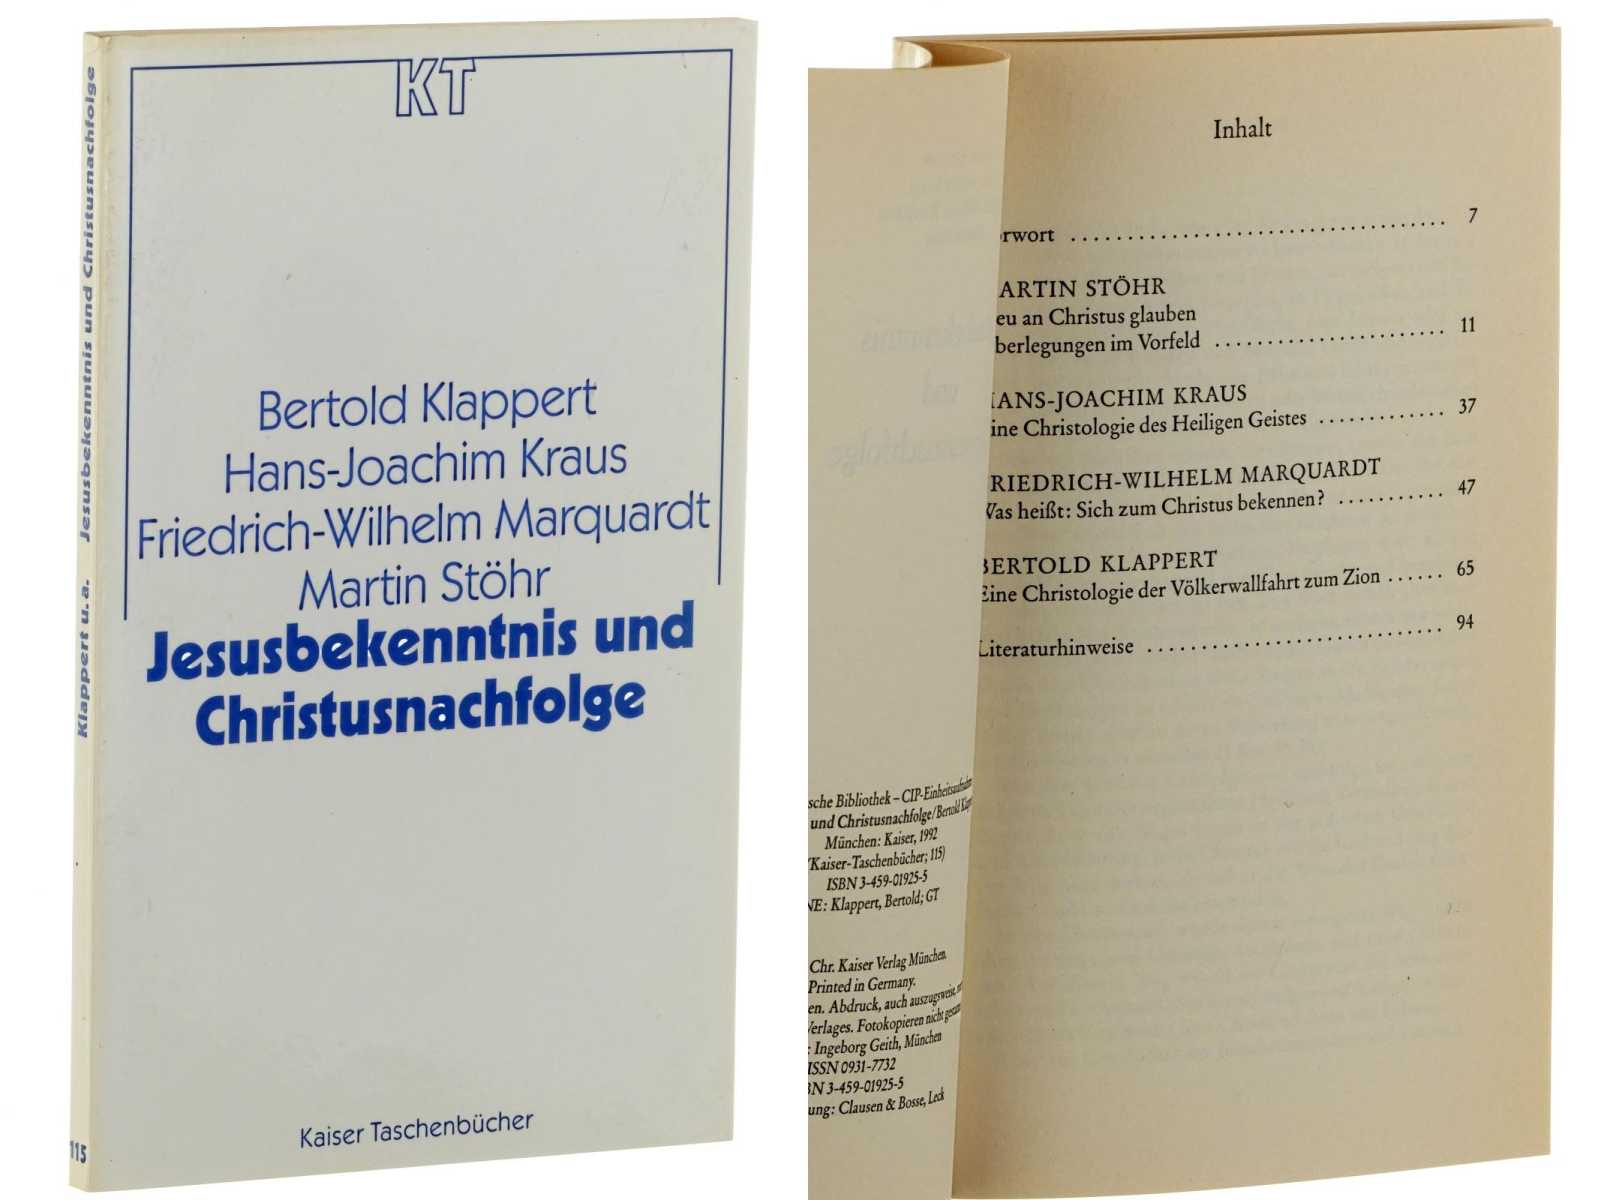 Klappert, Bertold/ Kraus, Hans-Joachim/ Marquardt, Friedrich-Wilhelm/ Stöhr, Martin:  Jesusbekenntnis und Christusnachfolge 